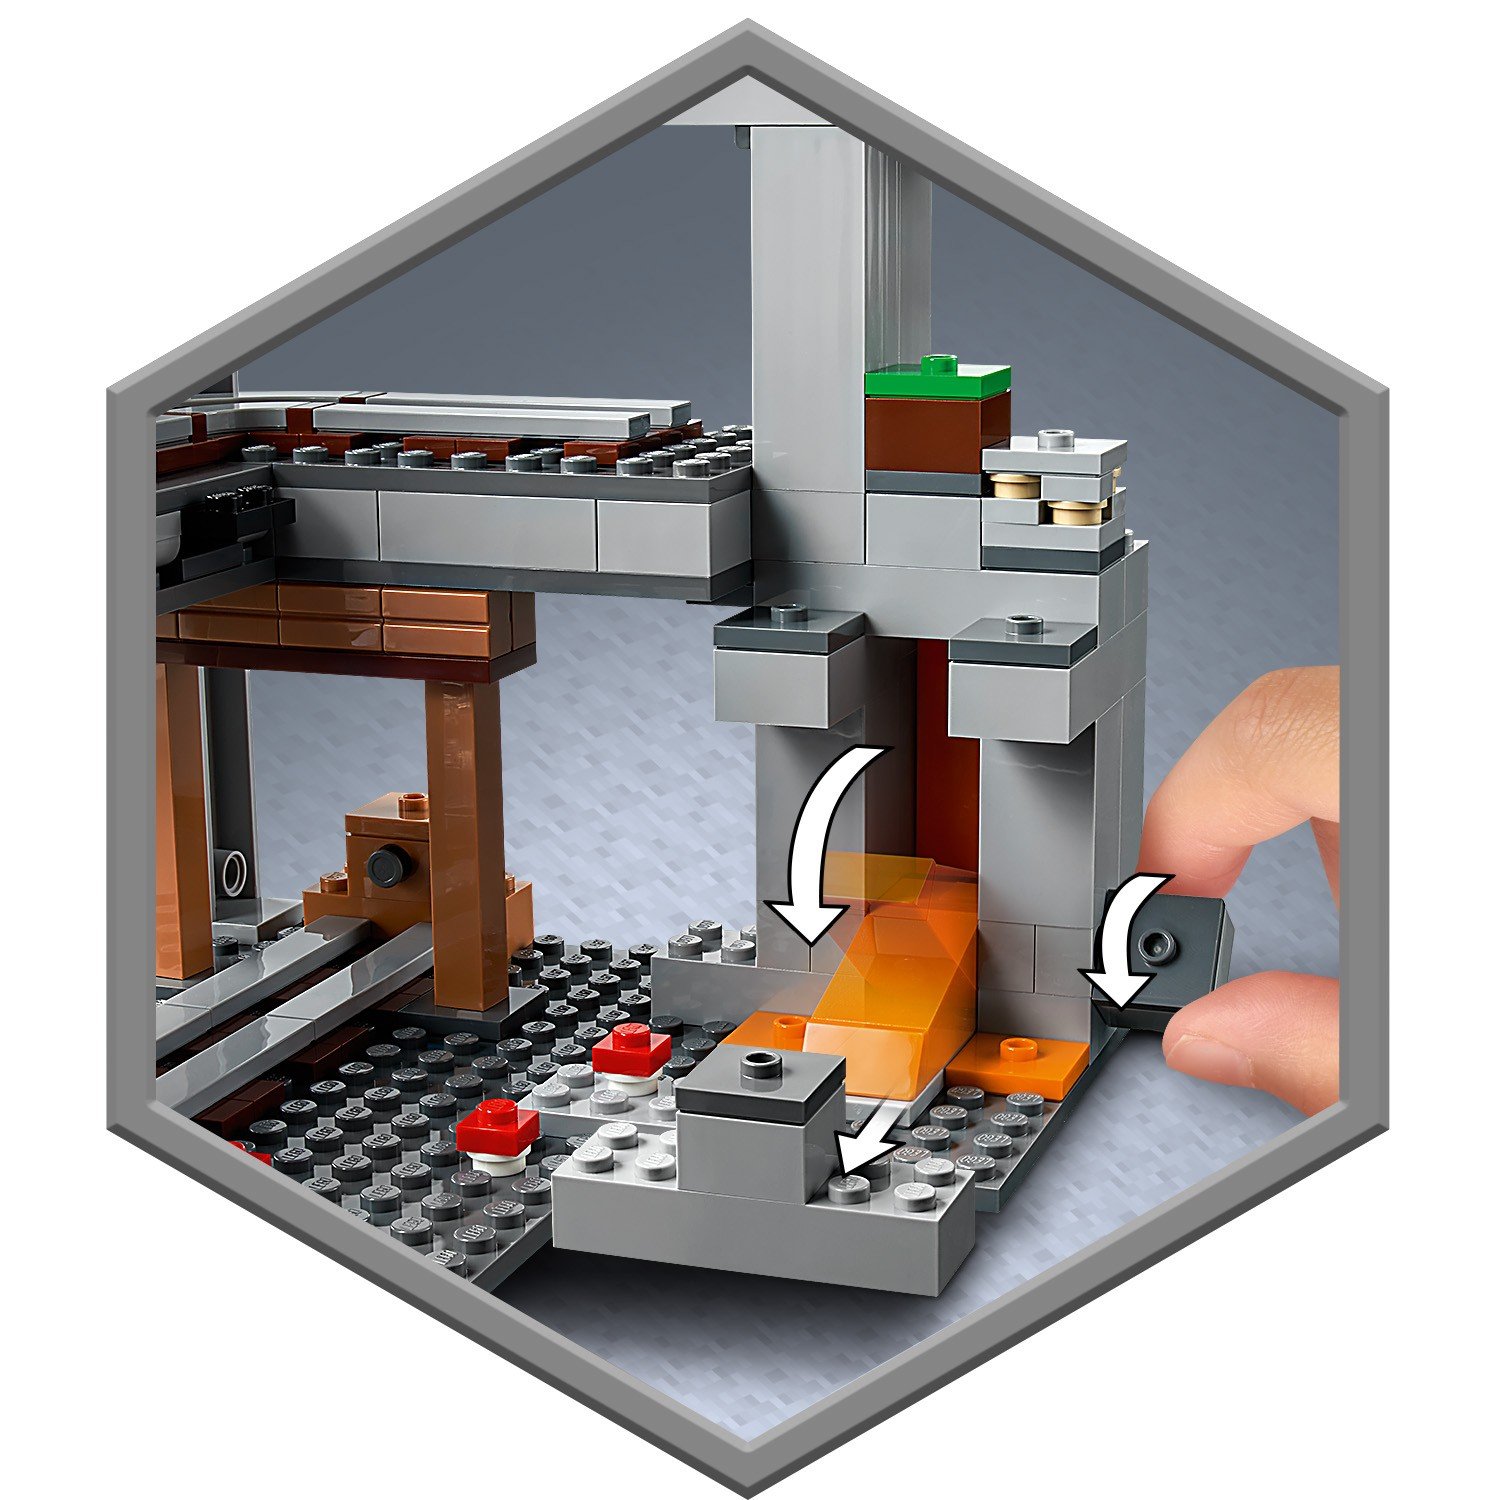 Lego Minecraft 21169 Первое приключение